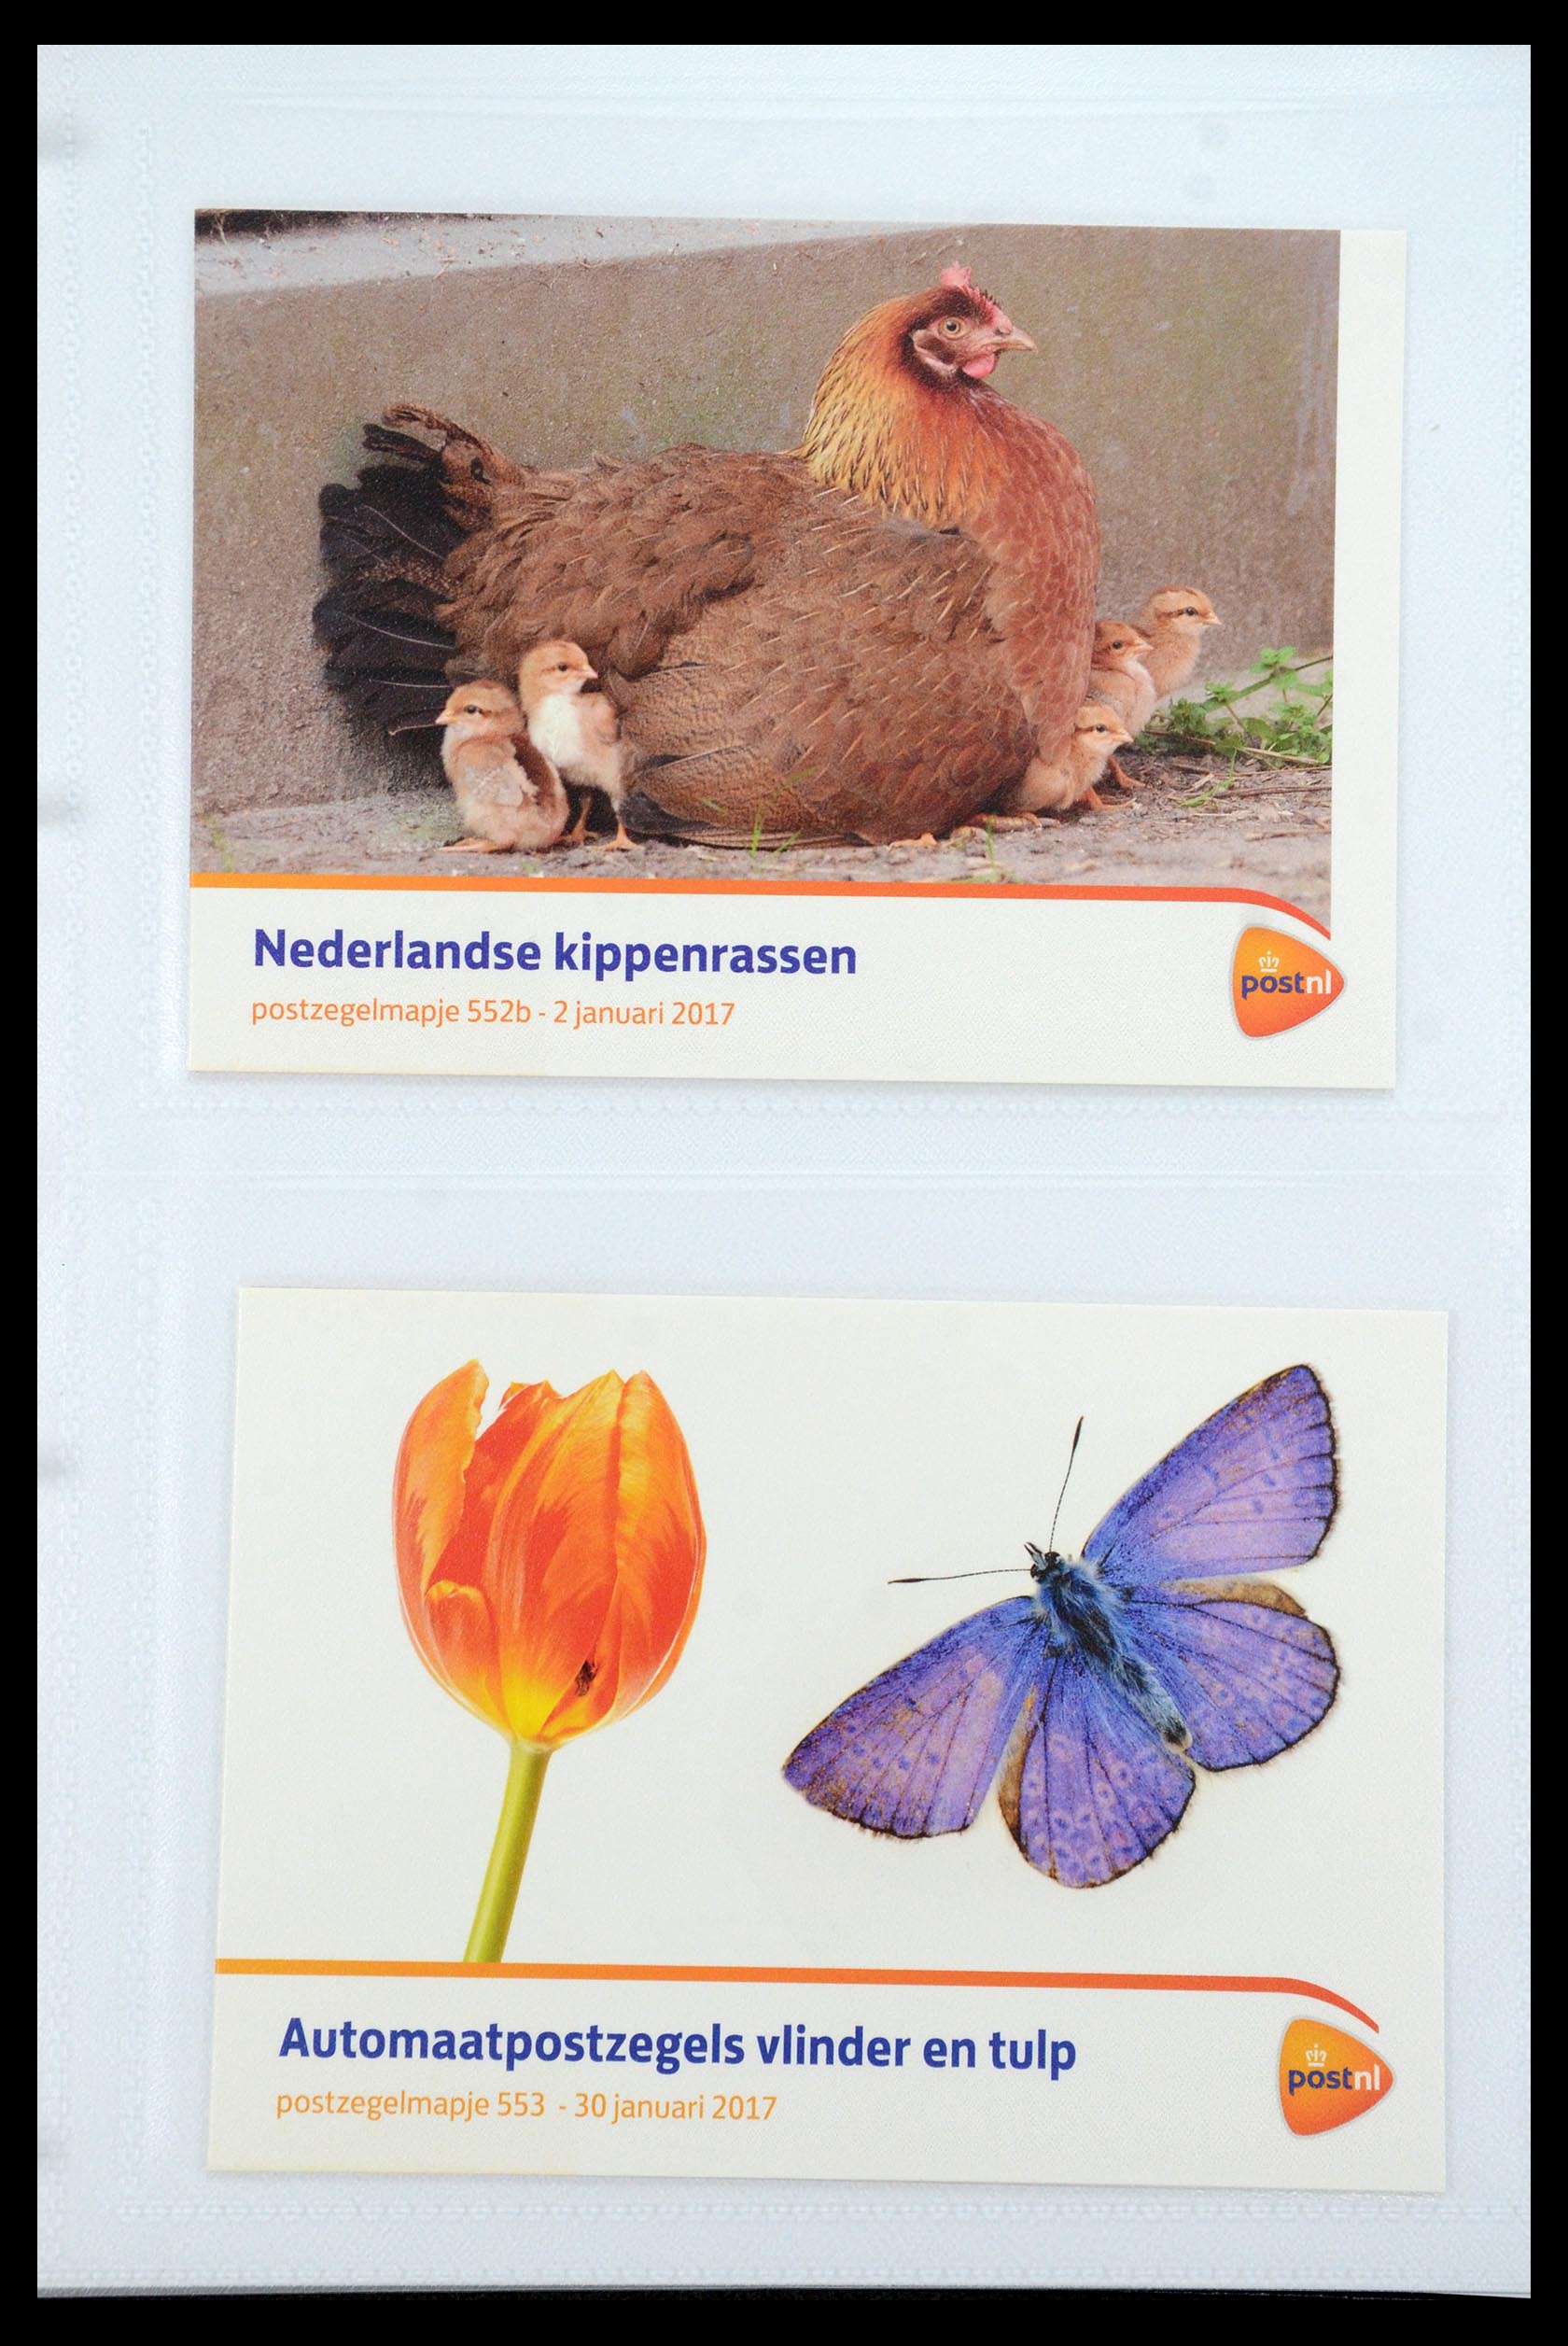 35947 330 - Stamp Collection 35947 Netherlands PTT presentation packs 1982-2019!